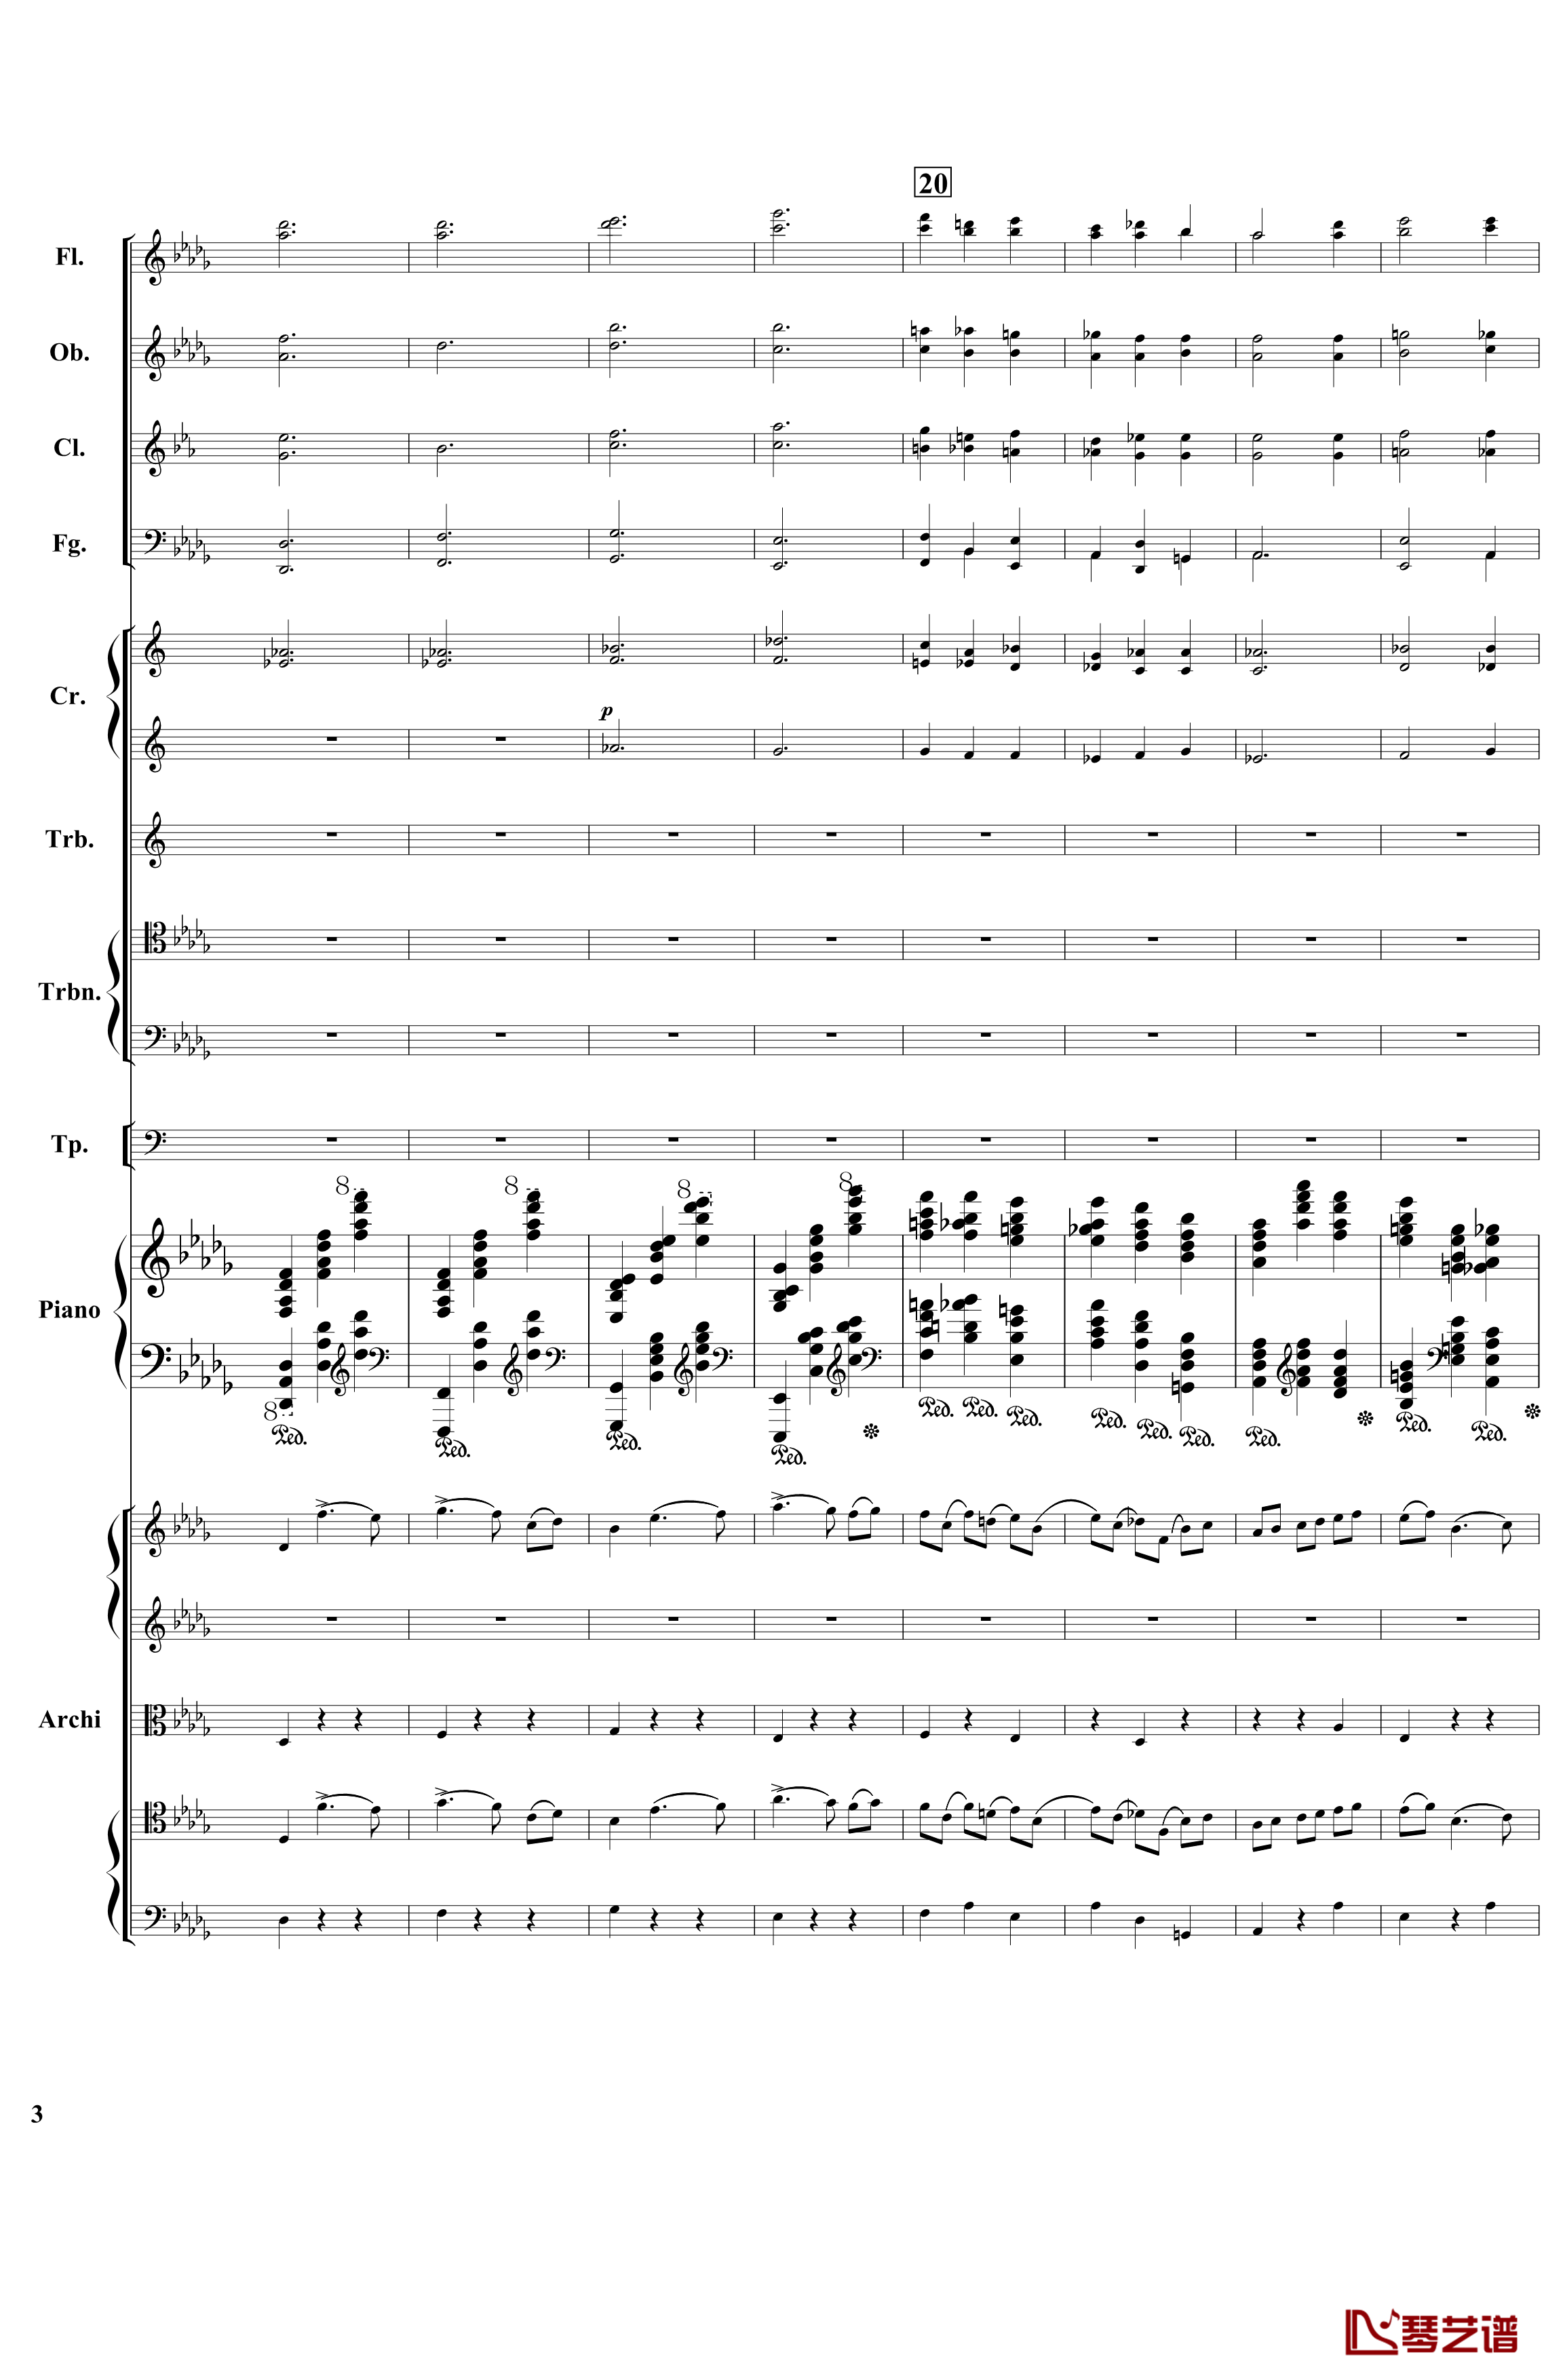 降B小调第一钢琴协奏曲钢琴谱-总谱-部分-柴科夫斯基-Peter Ilyich Tchaikovsky3